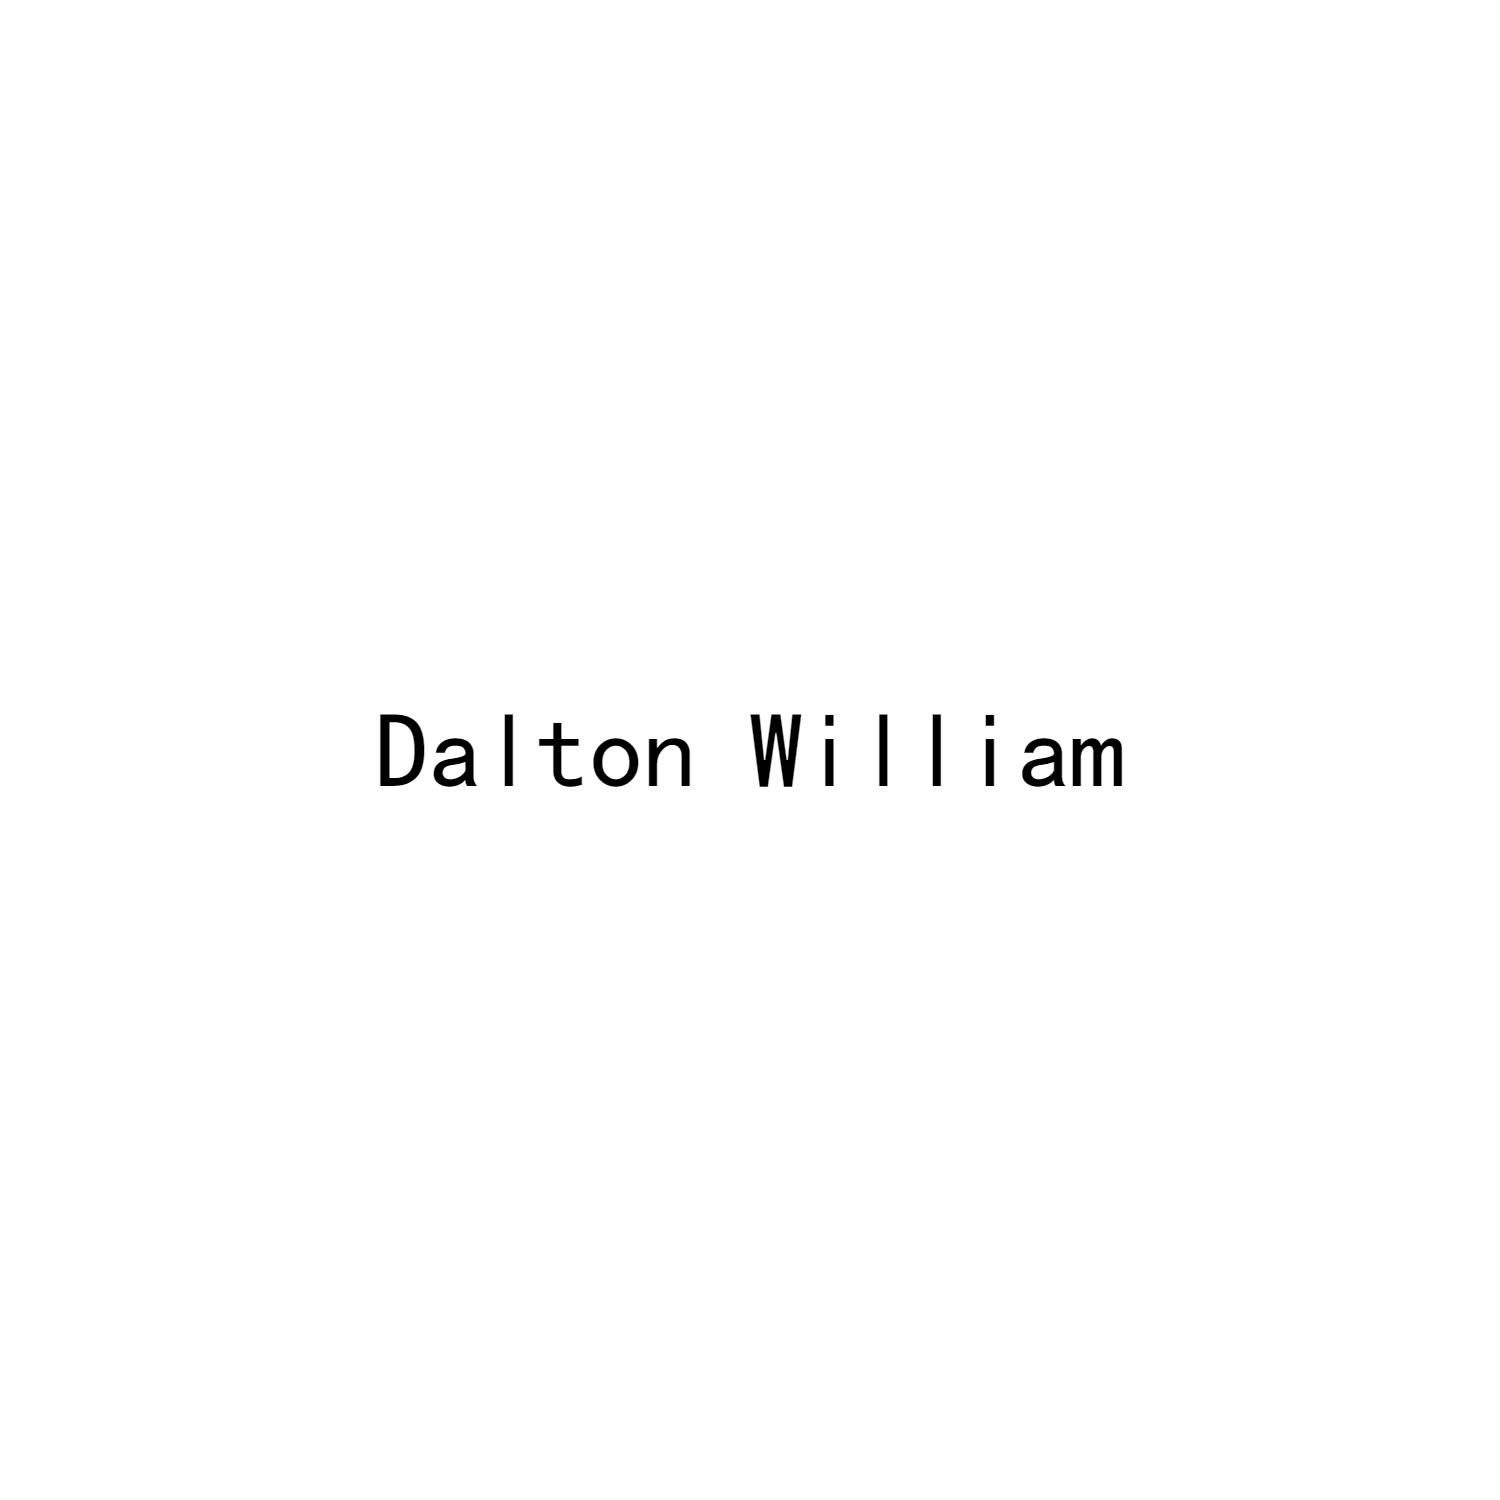 DALTON WILLIAM